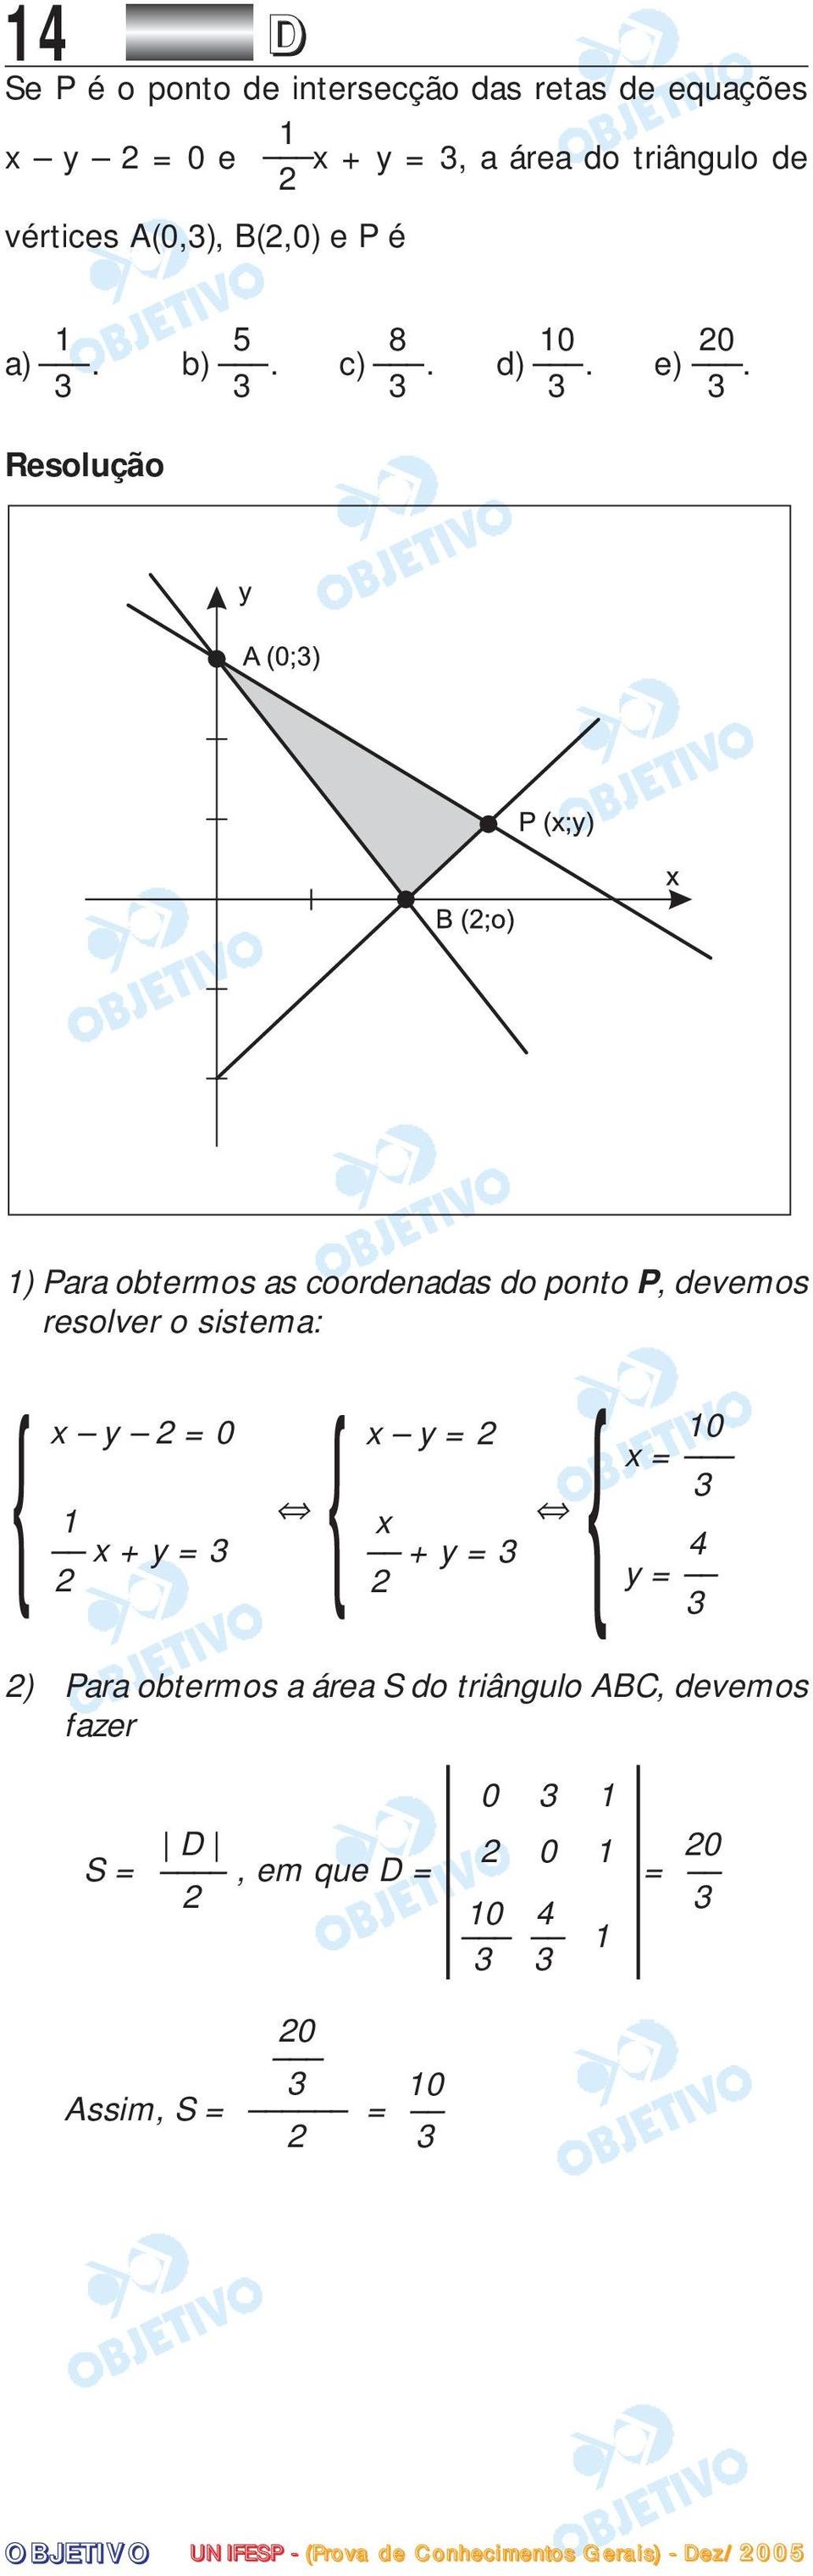 3 3 3 3 3 1) Para obtermos as coordenadas do ponto P, devemos resolver o sistema: { x y 2 = 0 1 x + y = 3 2 { {